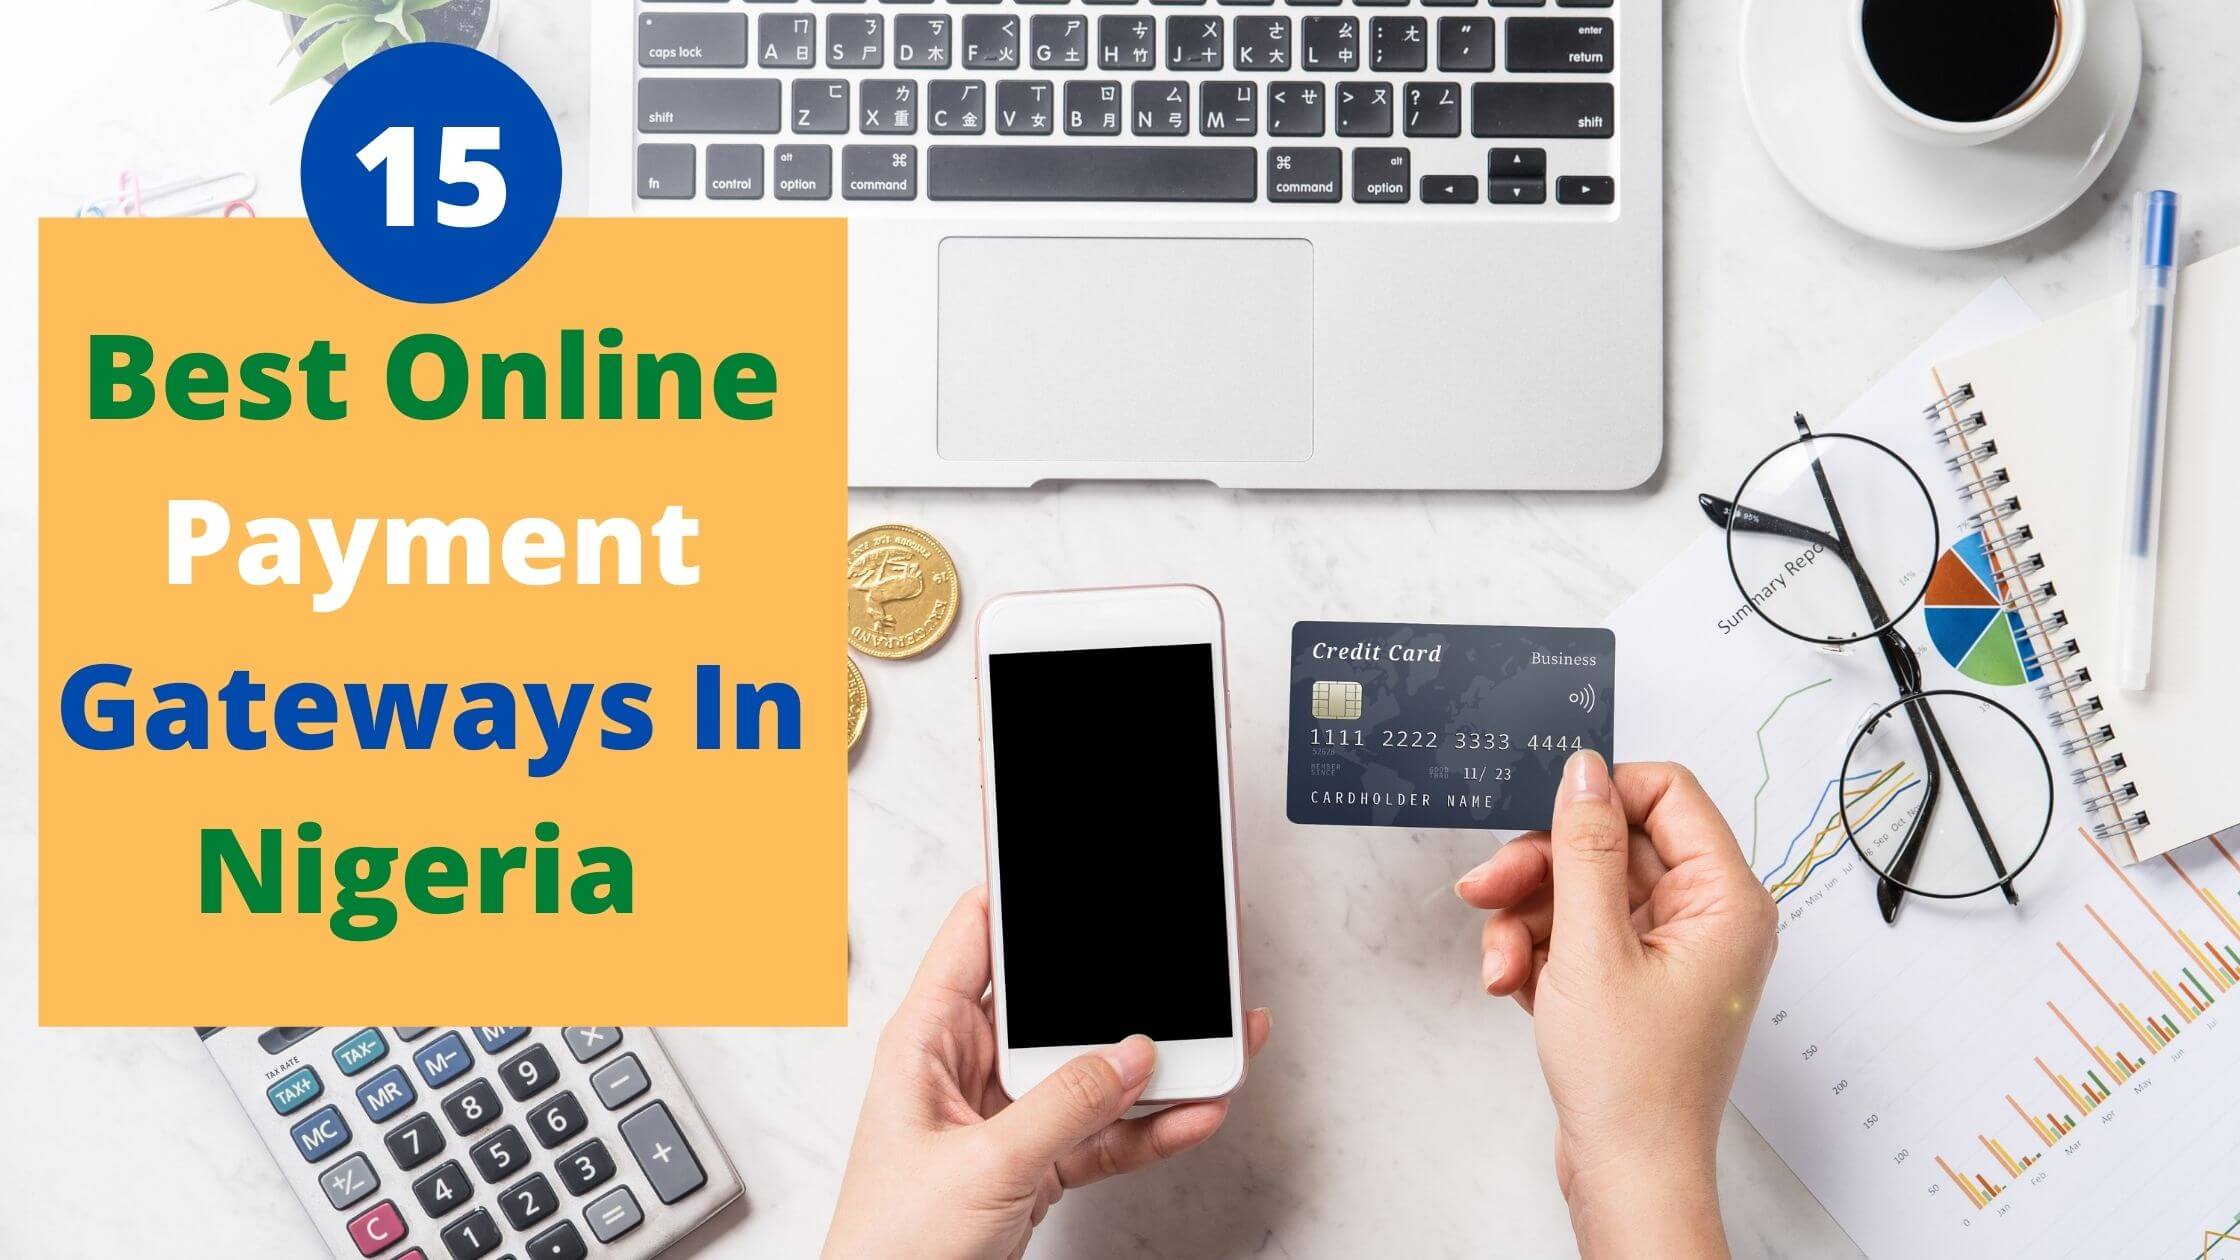 Best Online Payment Gateways In Nigeria